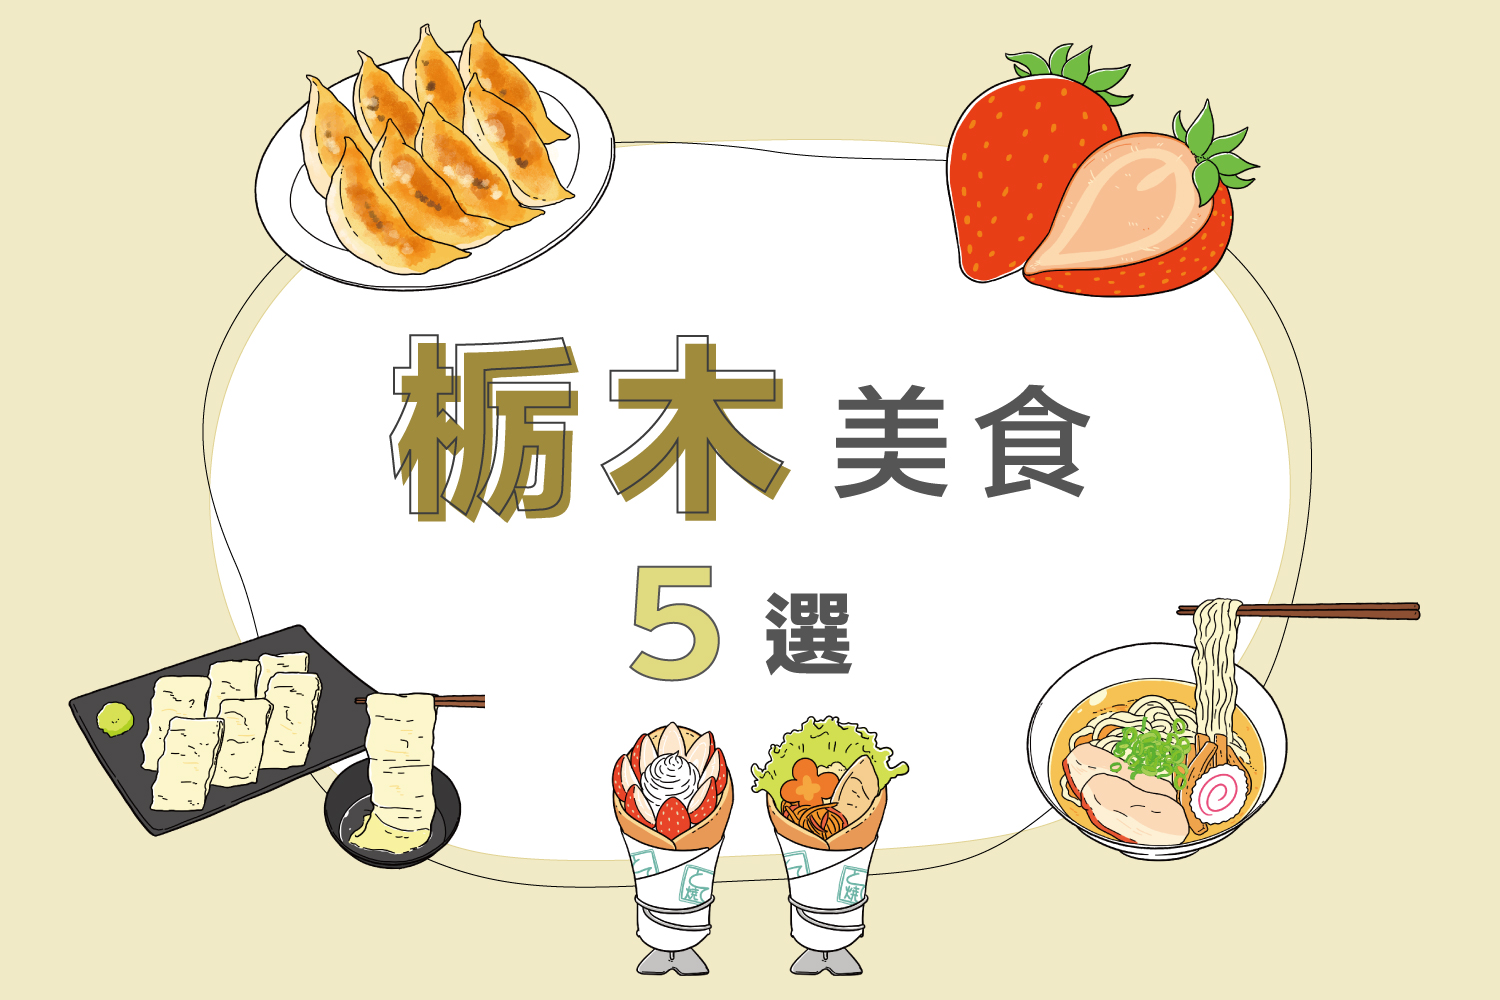 【關東】栃木美食5選 | 宇都宮餃子、日光湯葉、鯛魚燒等介紹